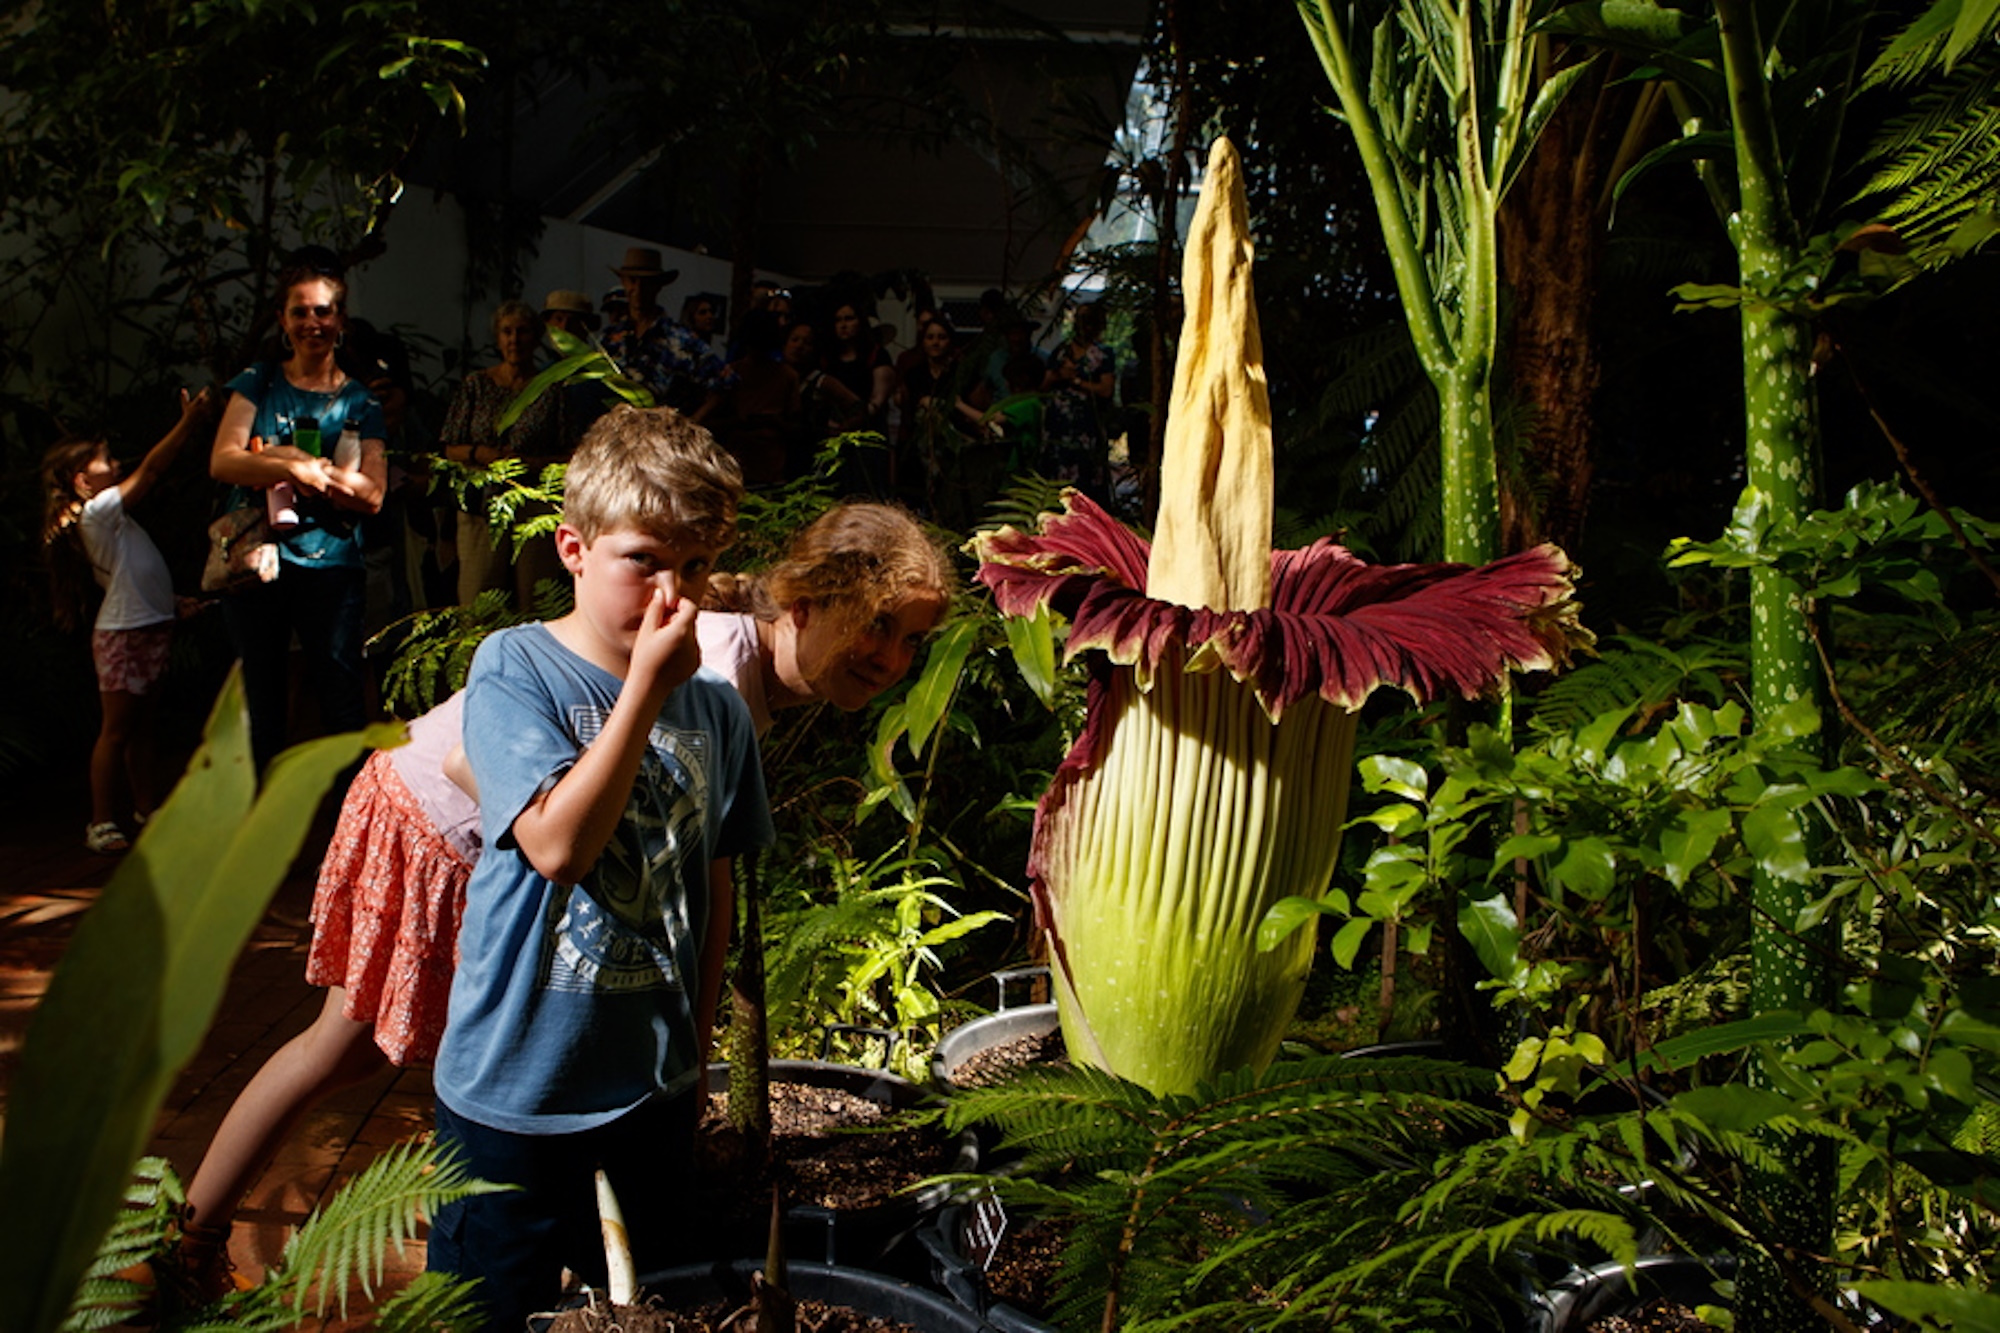 Στο Βέλγιο θαυμάζουν τον «Φαλλό του Τιτάνα» το γιγάντιο λουλούδι που ανθίζει μία φορά στα 3 χρόνια για λίγες ώρες